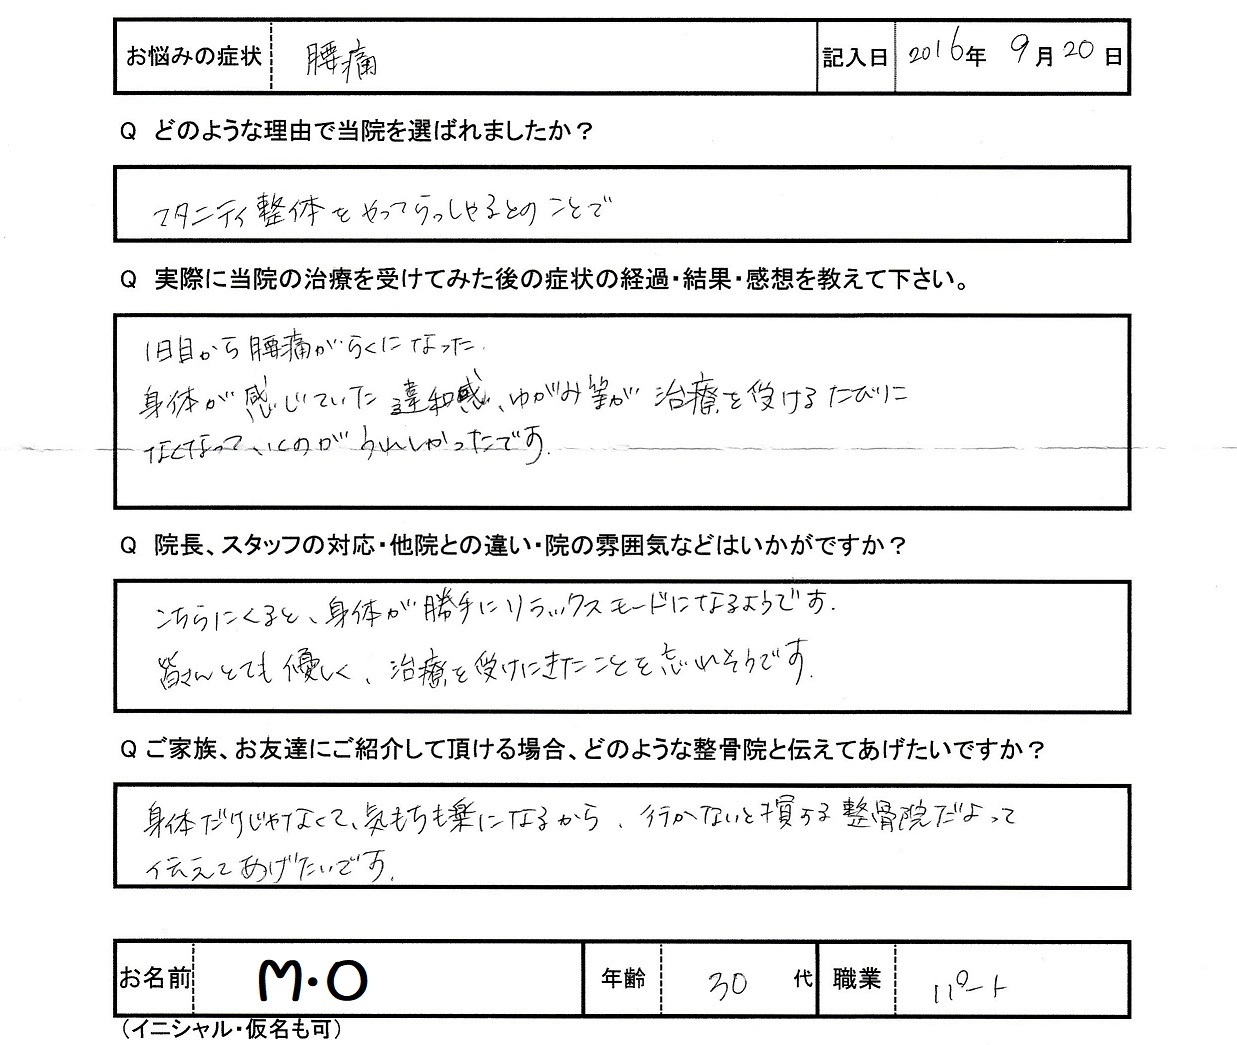 M・Oさんアンケート用紙